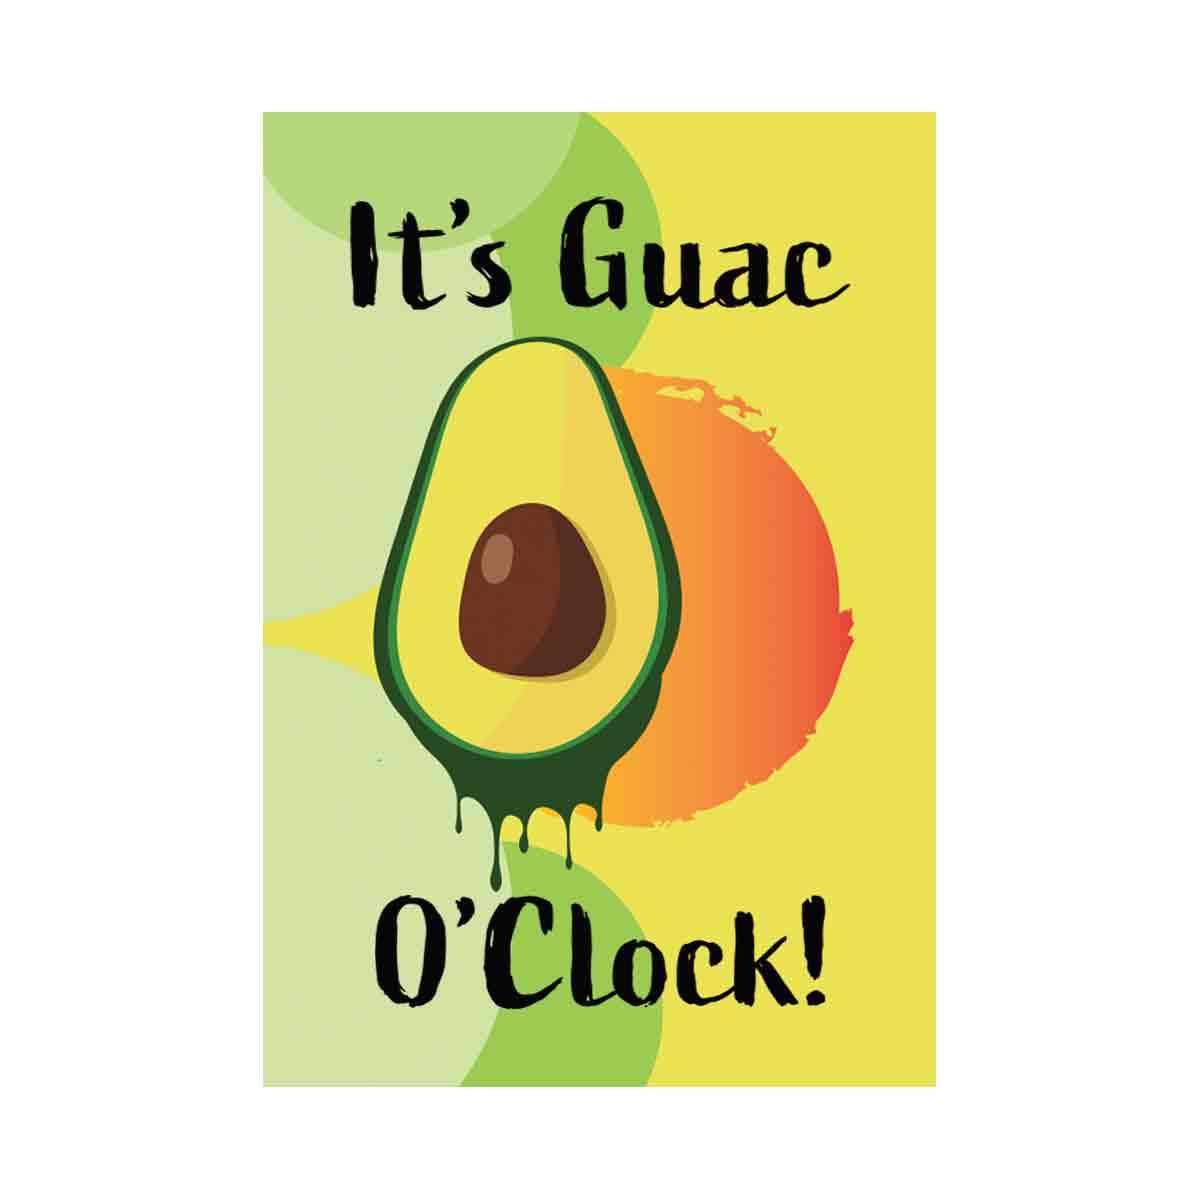 It's Guac' o'clock